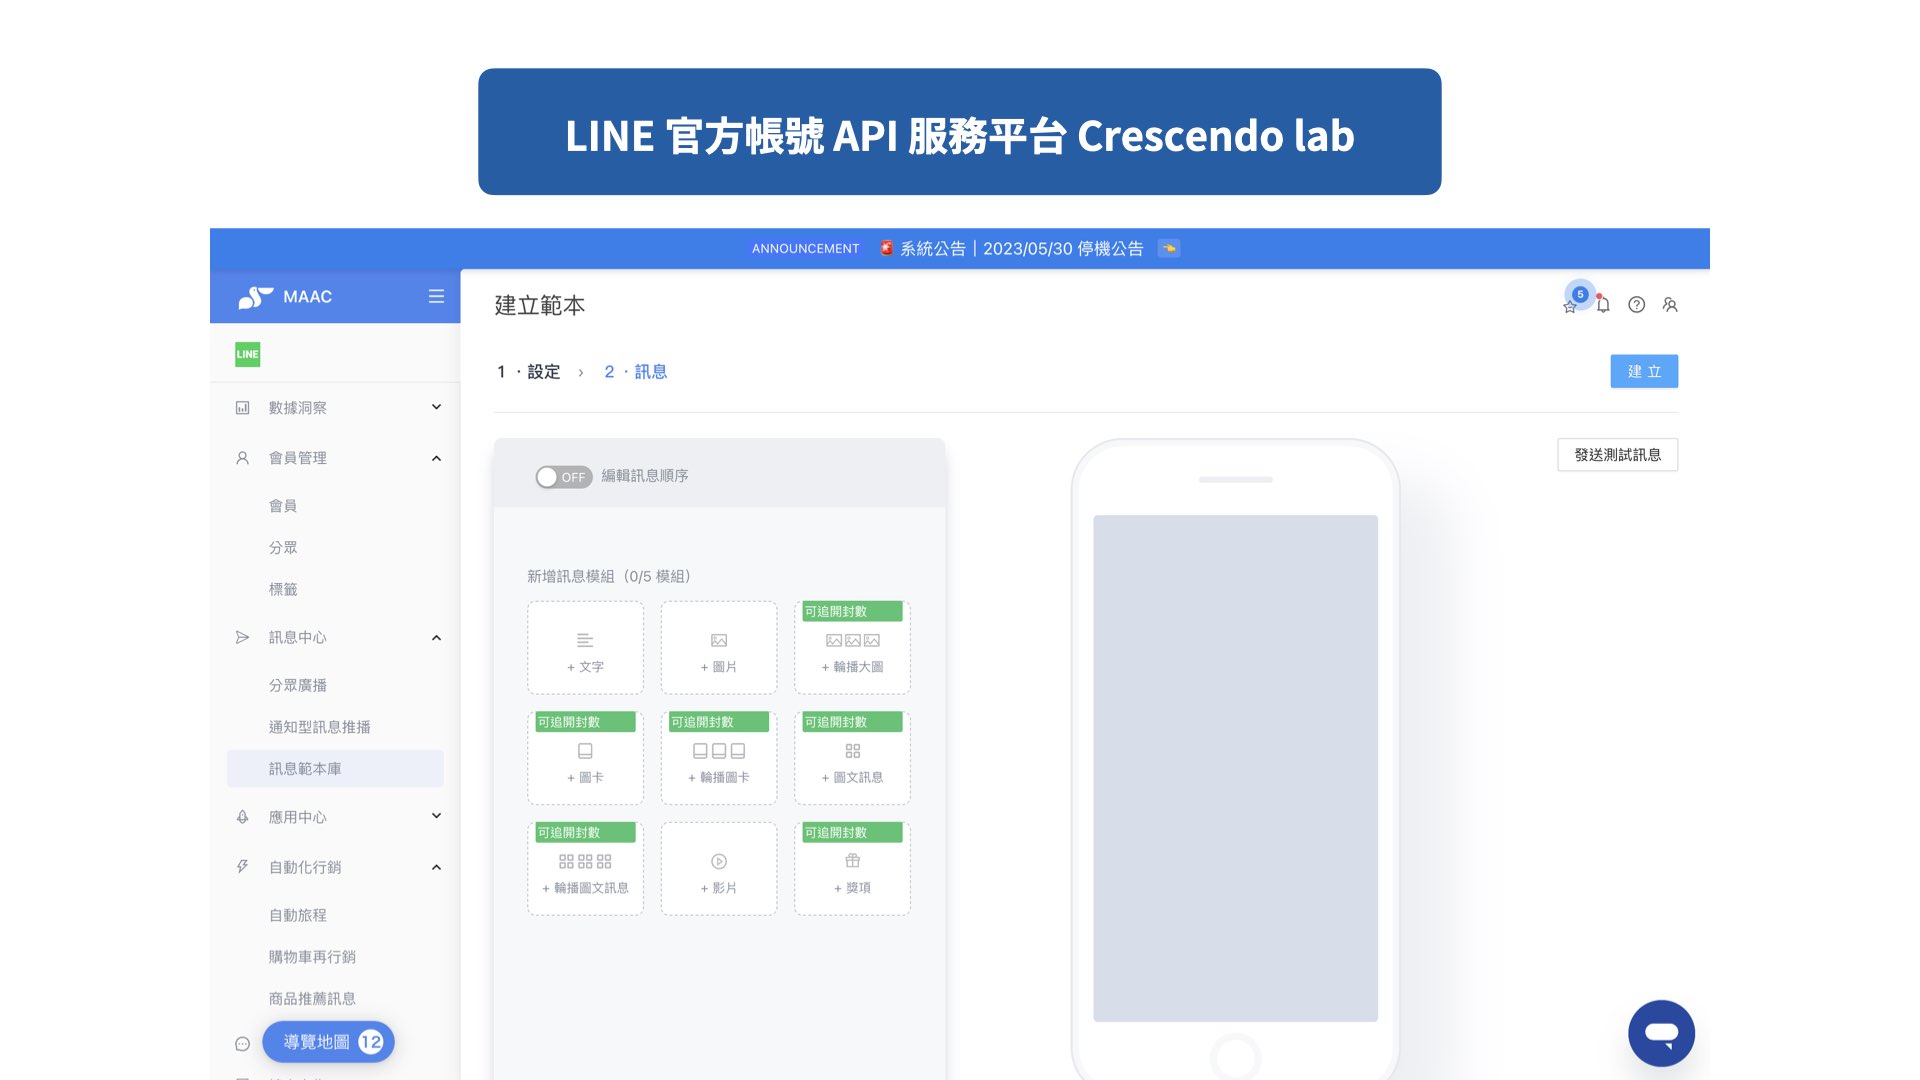 LINE官方帳號API 服務平台 漸強實驗室 Crescendo Lab